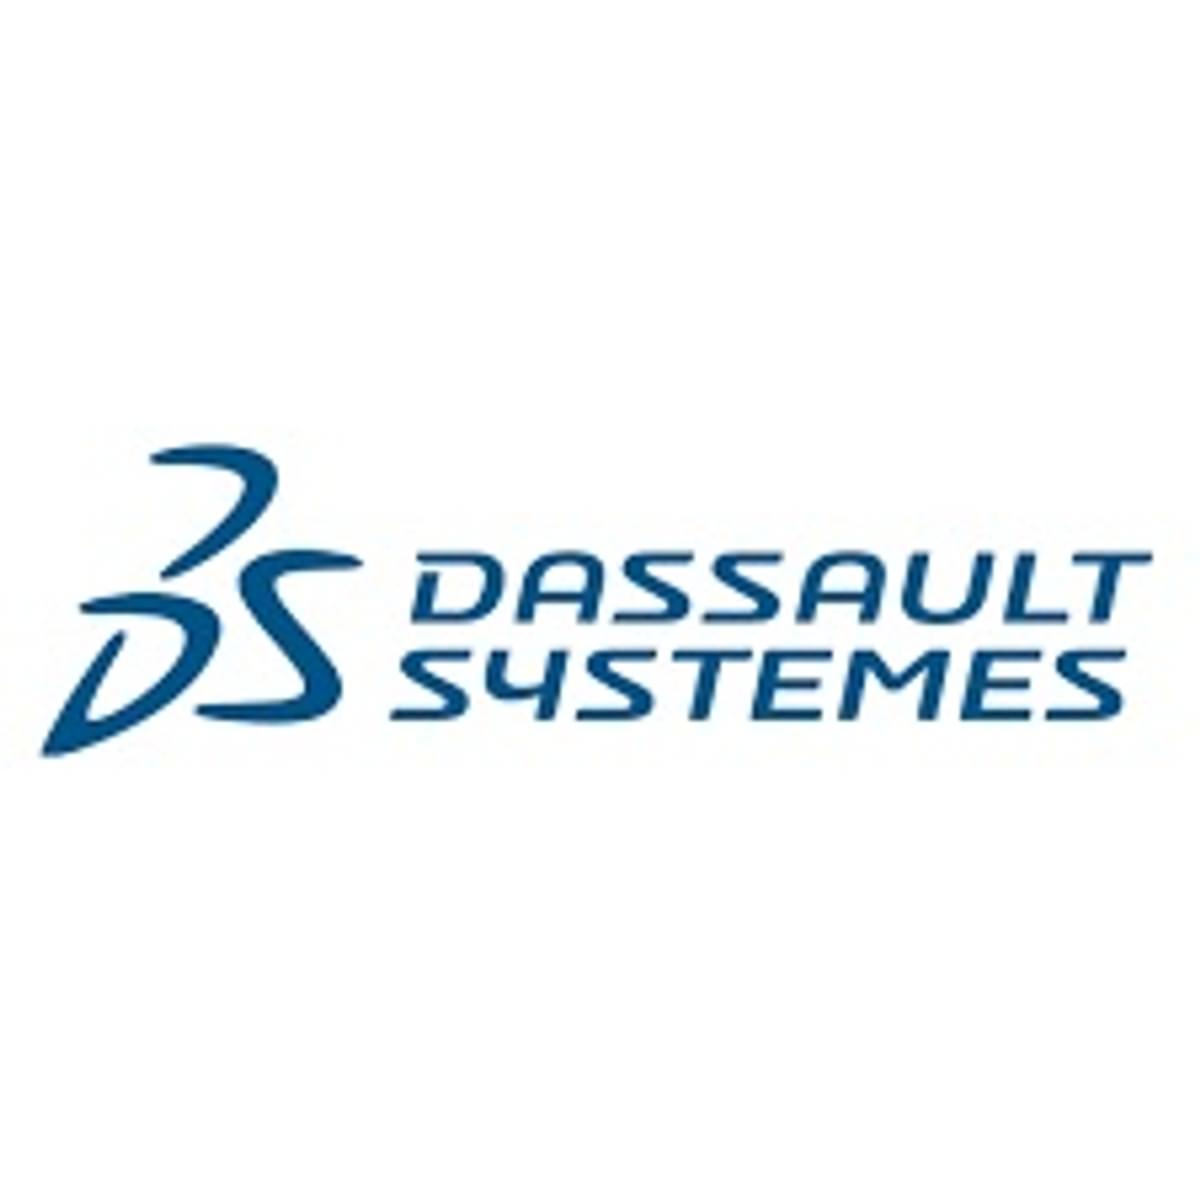 Dassault Systemes continueert sterke groei in derde kwartaal 2021 image